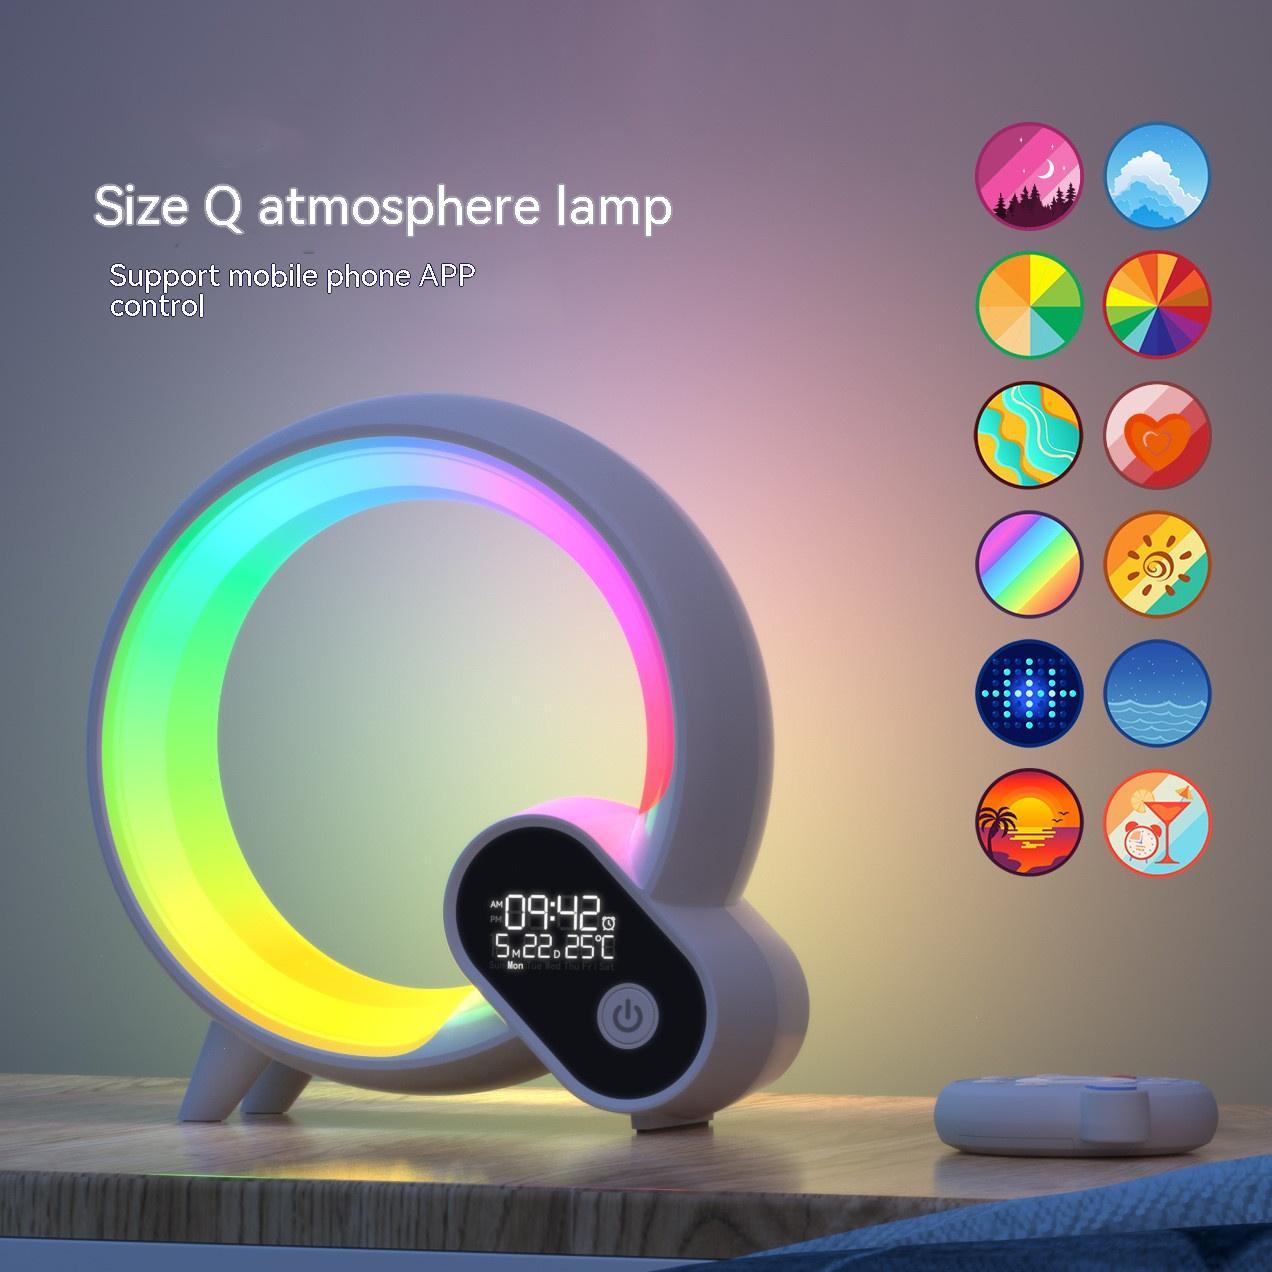 Creative Q atmosphere lamp